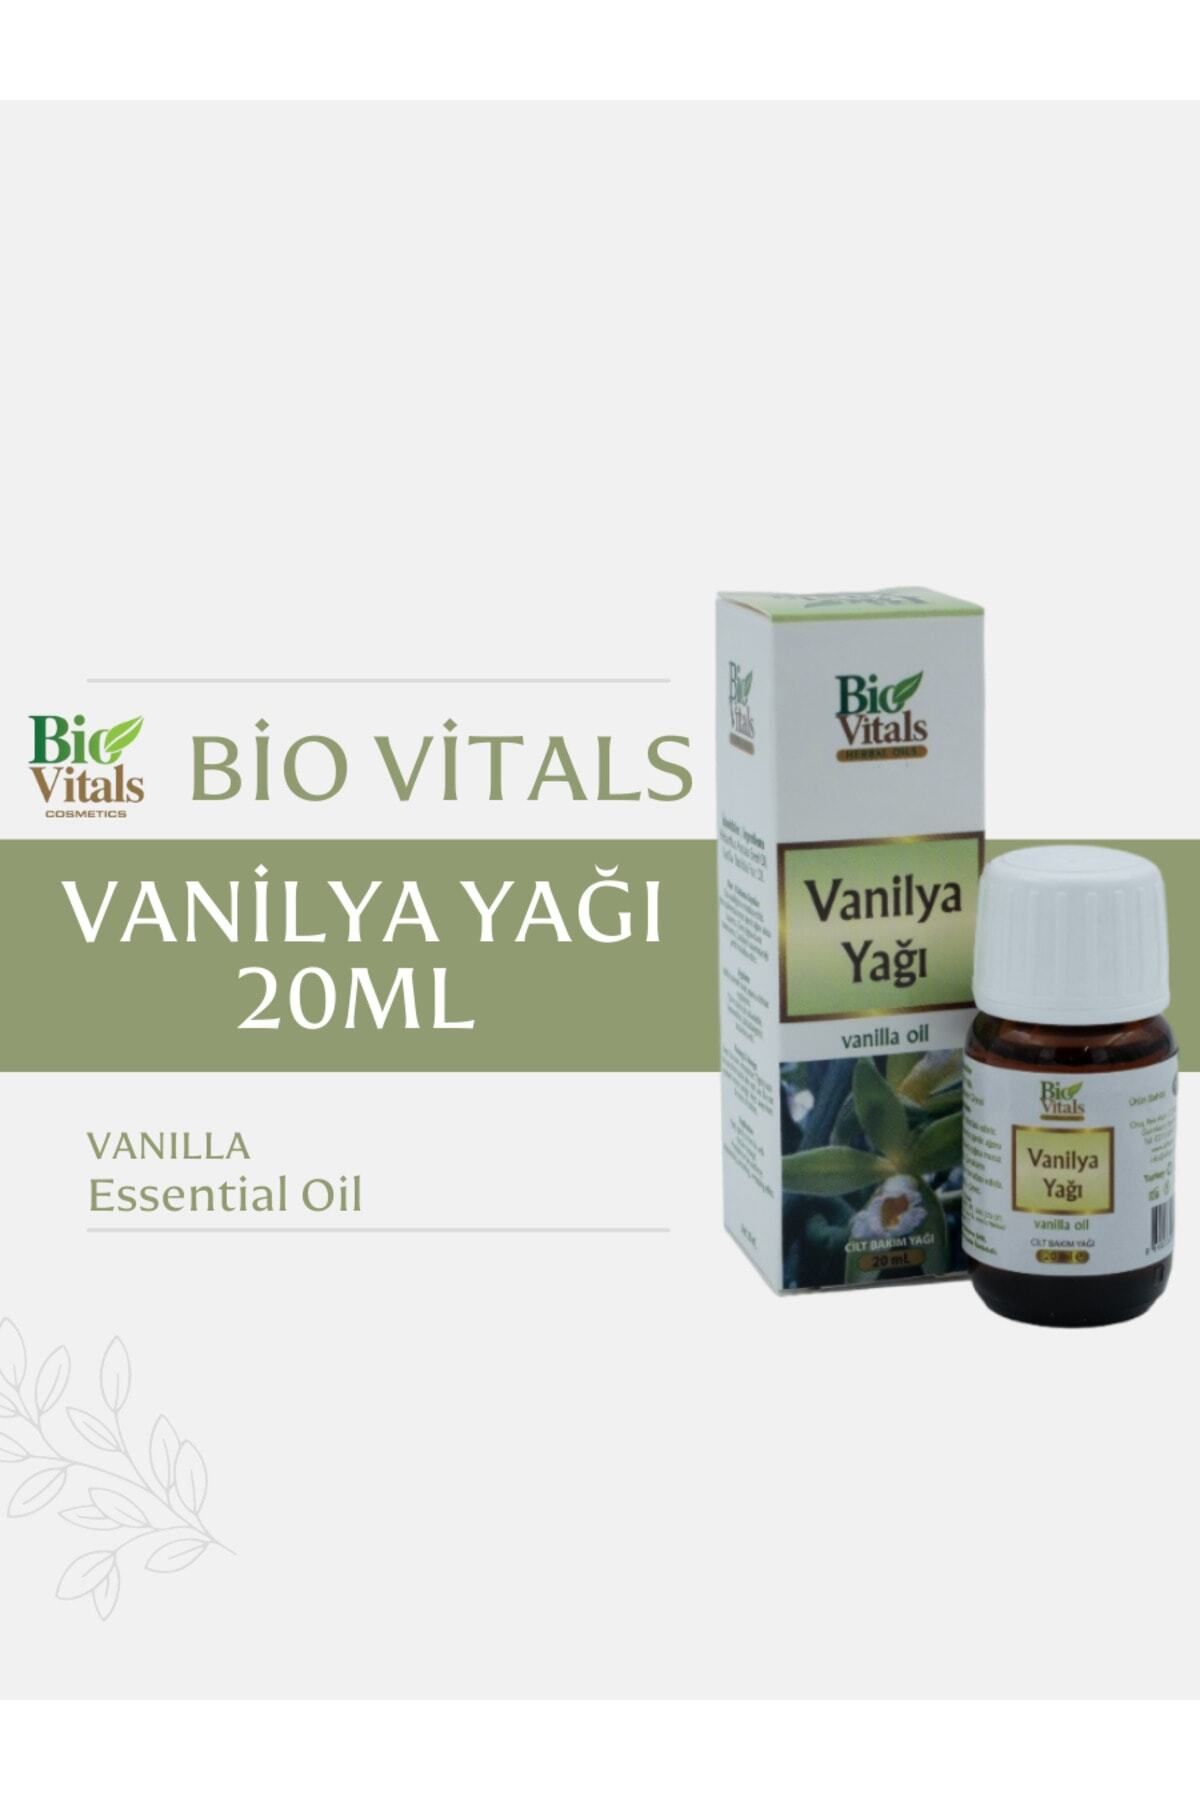 Bio Vitals Vanilya Yağı 20ml